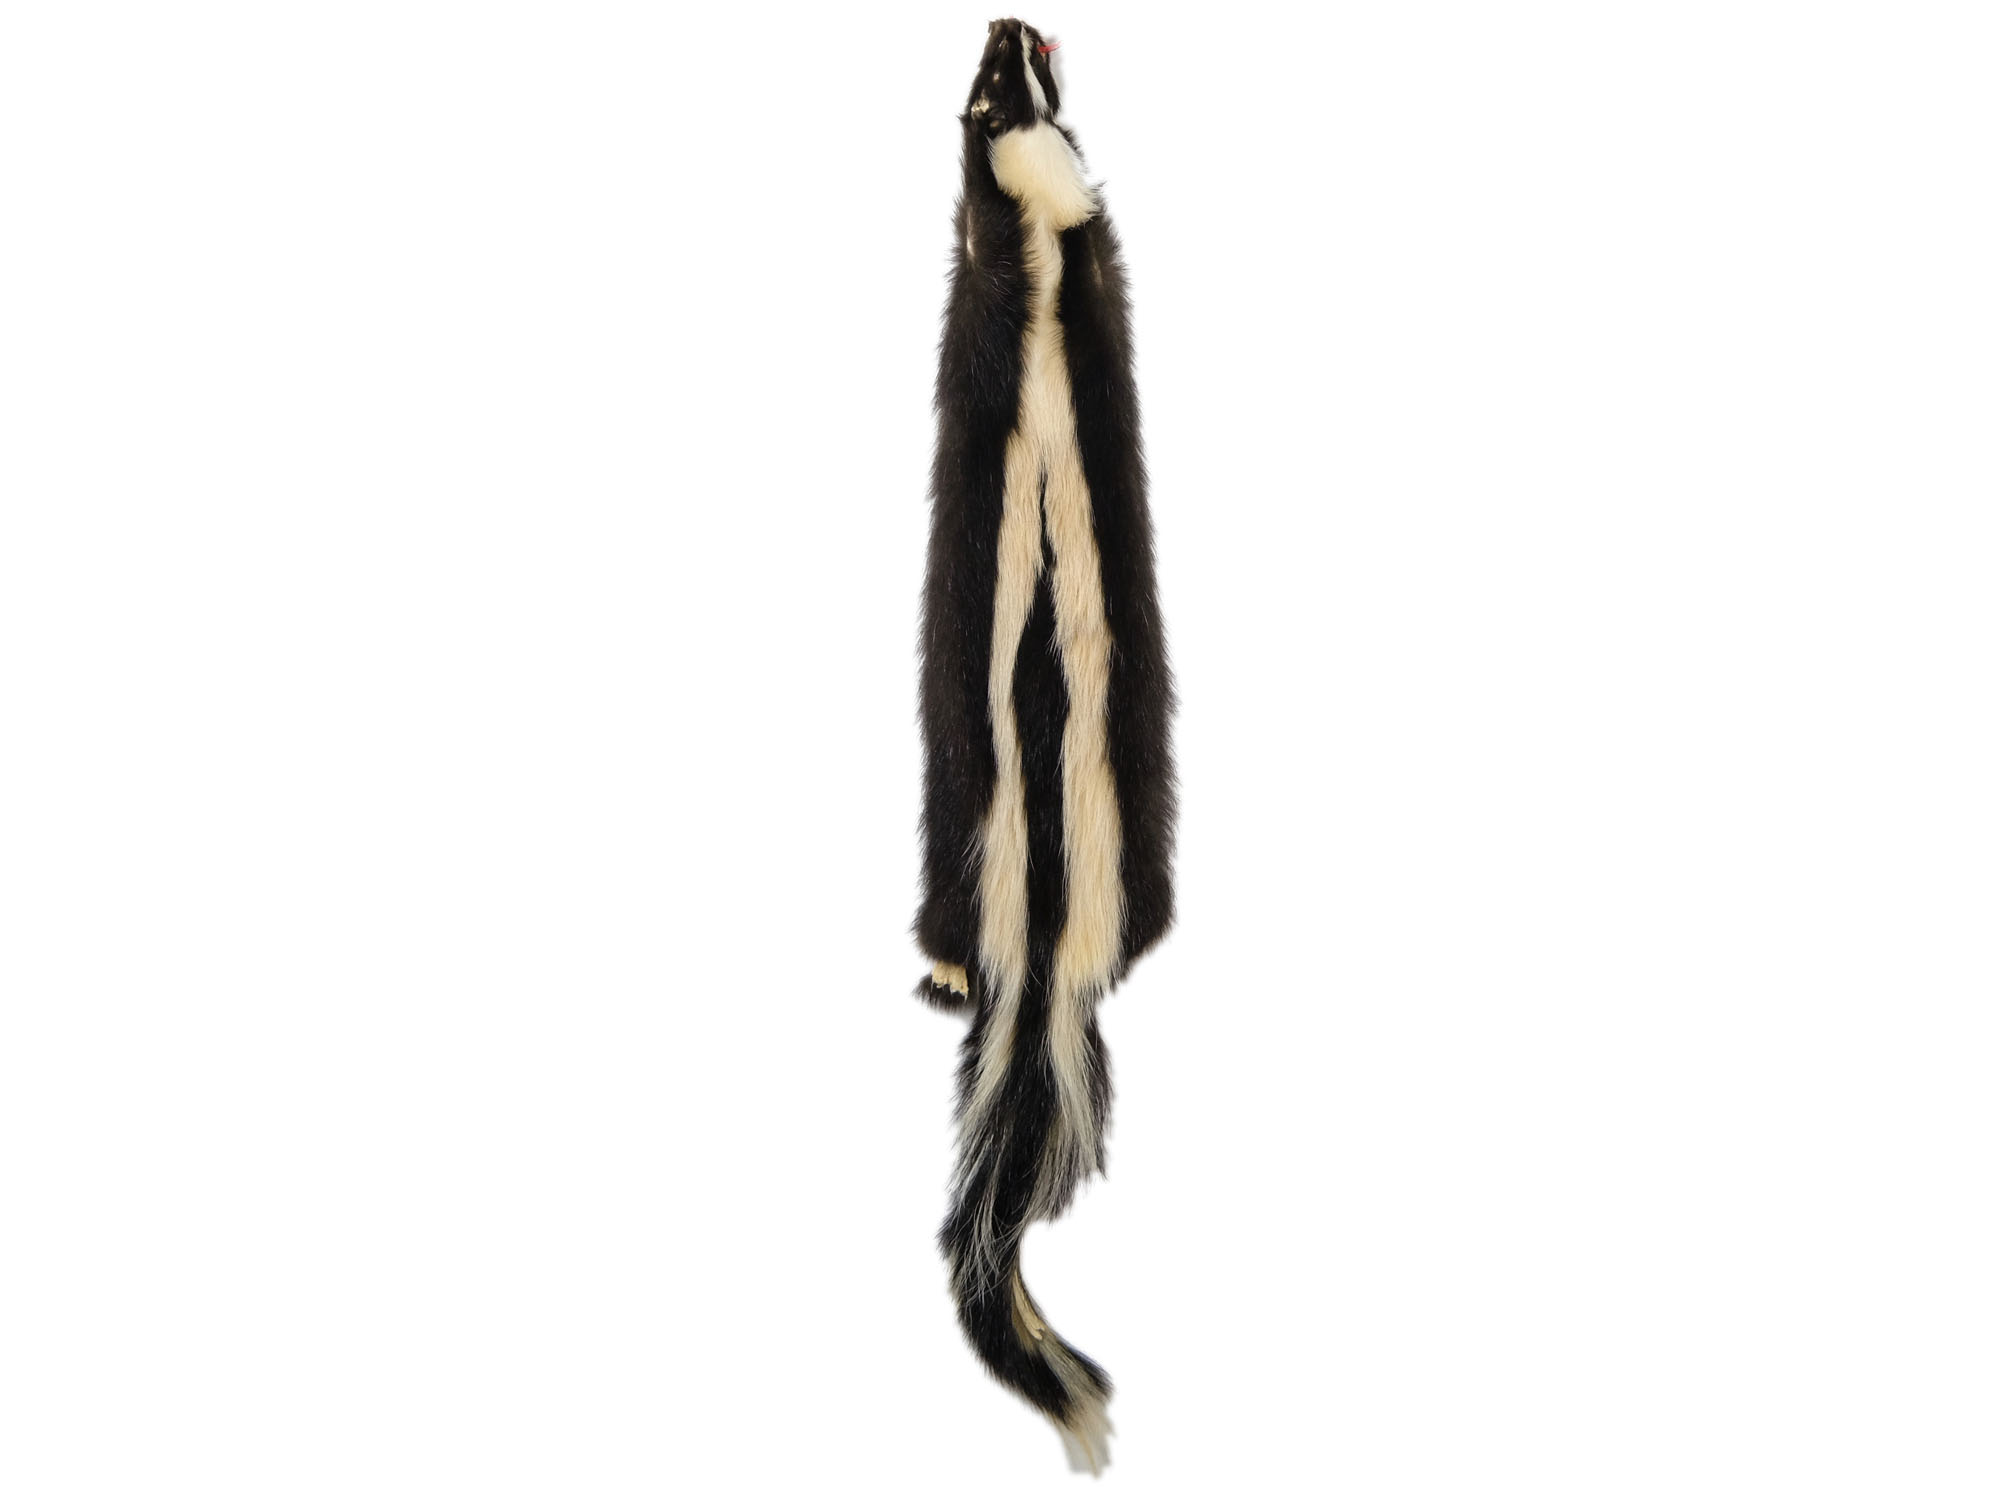 Skunk Skin: Gallery Item skunk hides, skunk pelts, skunk furs